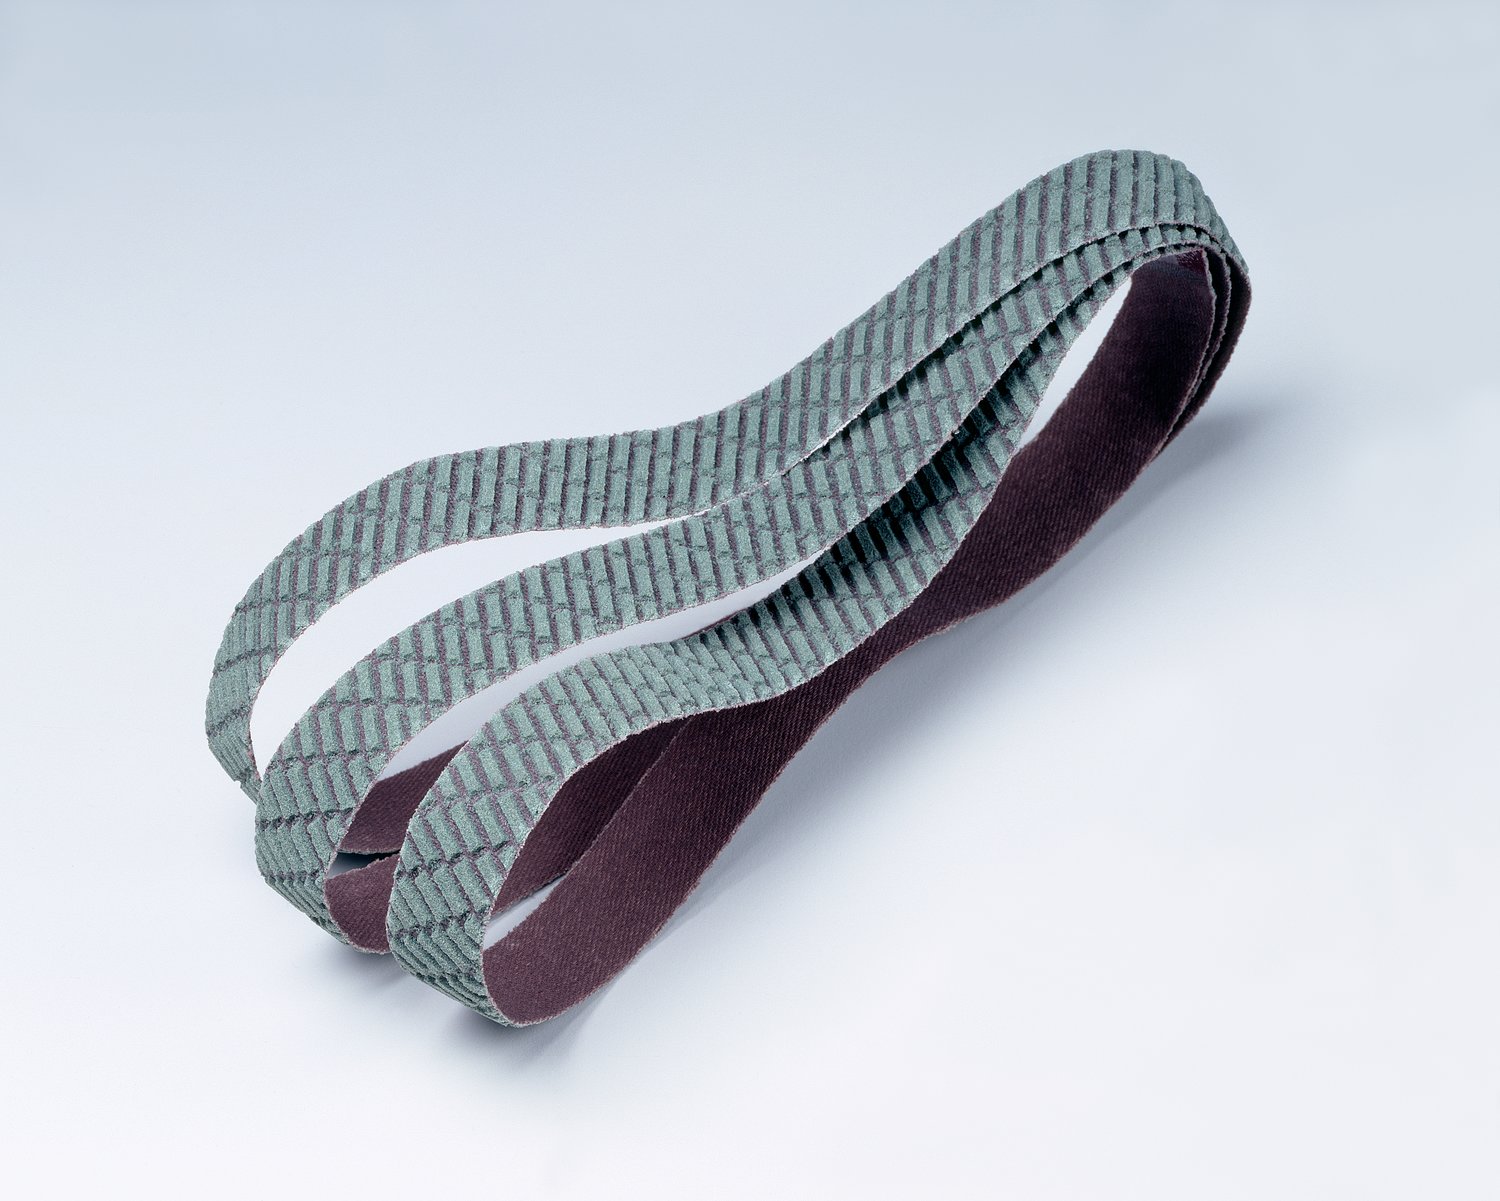 7010515012 - 3M Trizact Cloth Belt 327DC, A30 X-weight, 2 in x 72 in, Film-lok, No
Flex